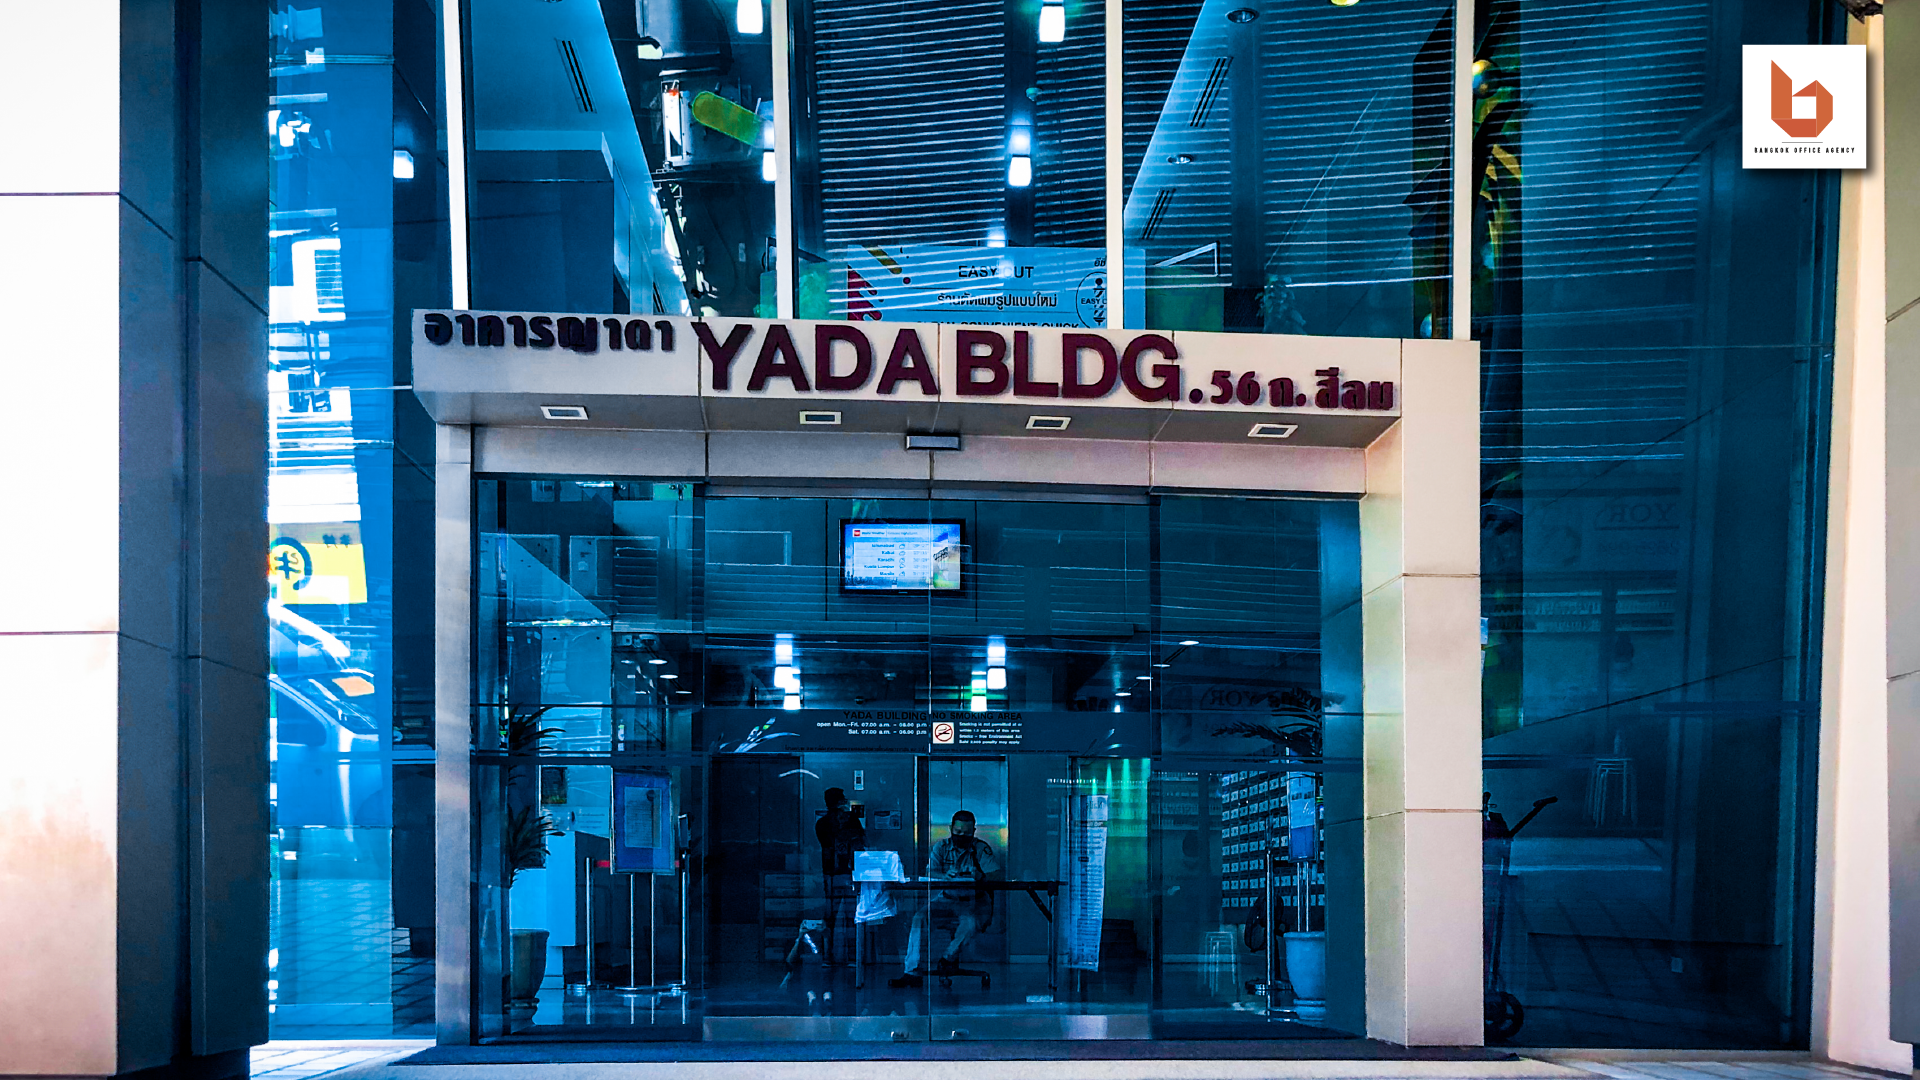 Yada Building 